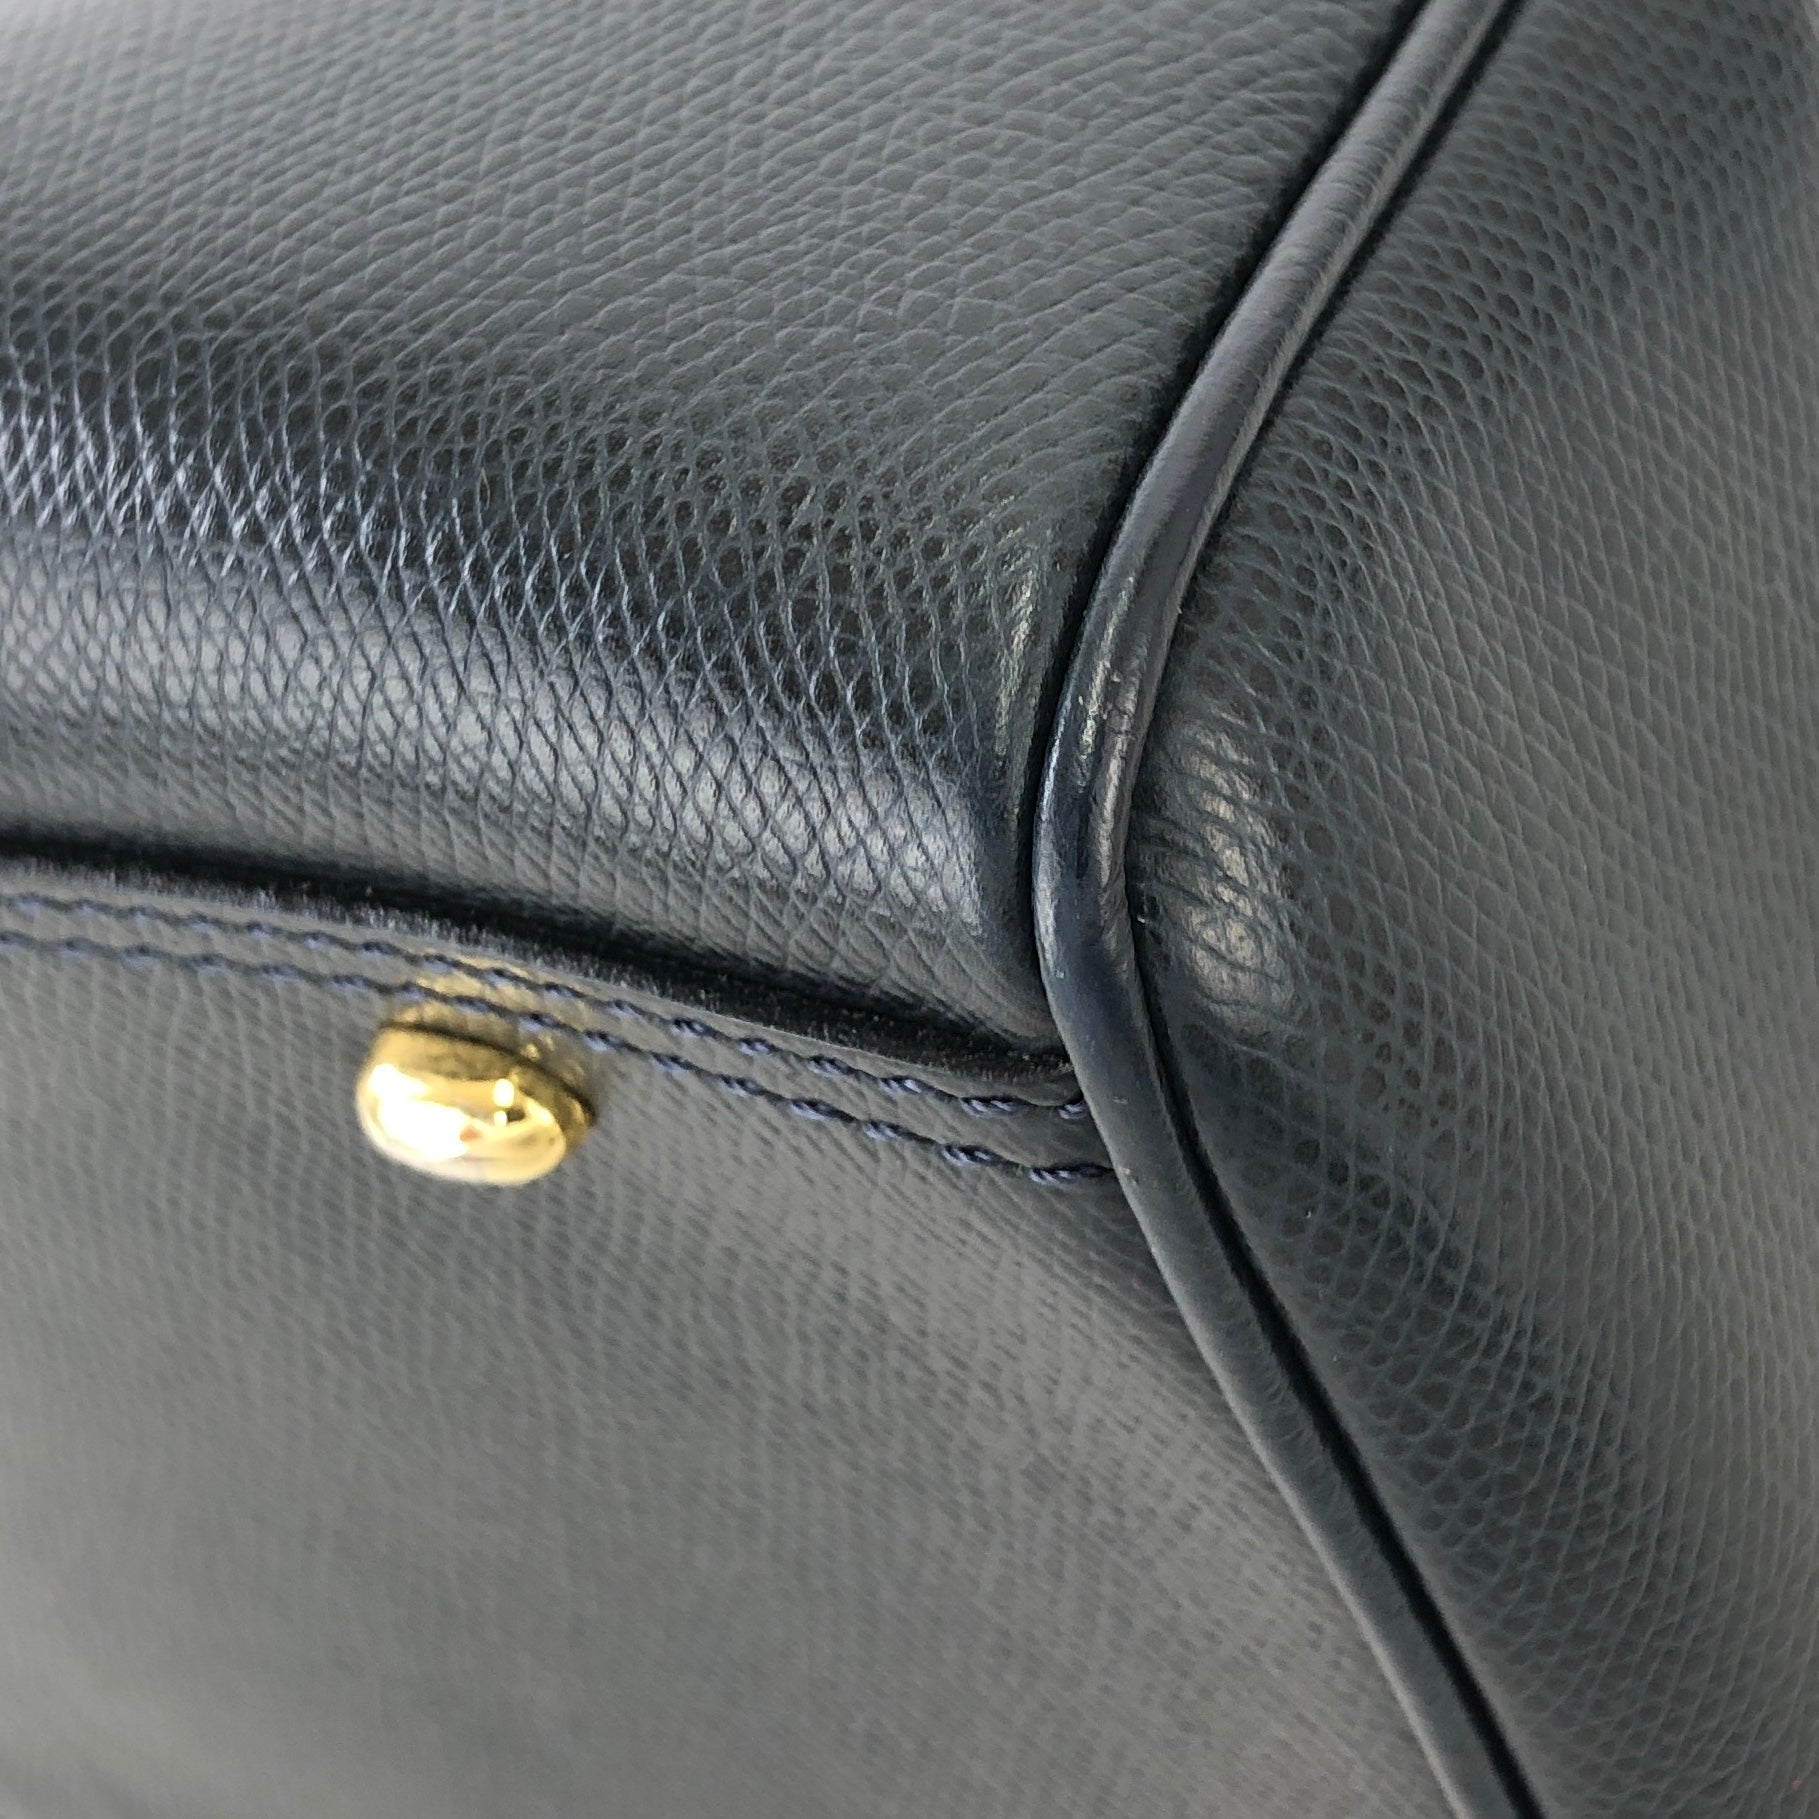 PRADA Embossed Logo Leather Boston bag Handbag Beige Vintage Old g78dhz